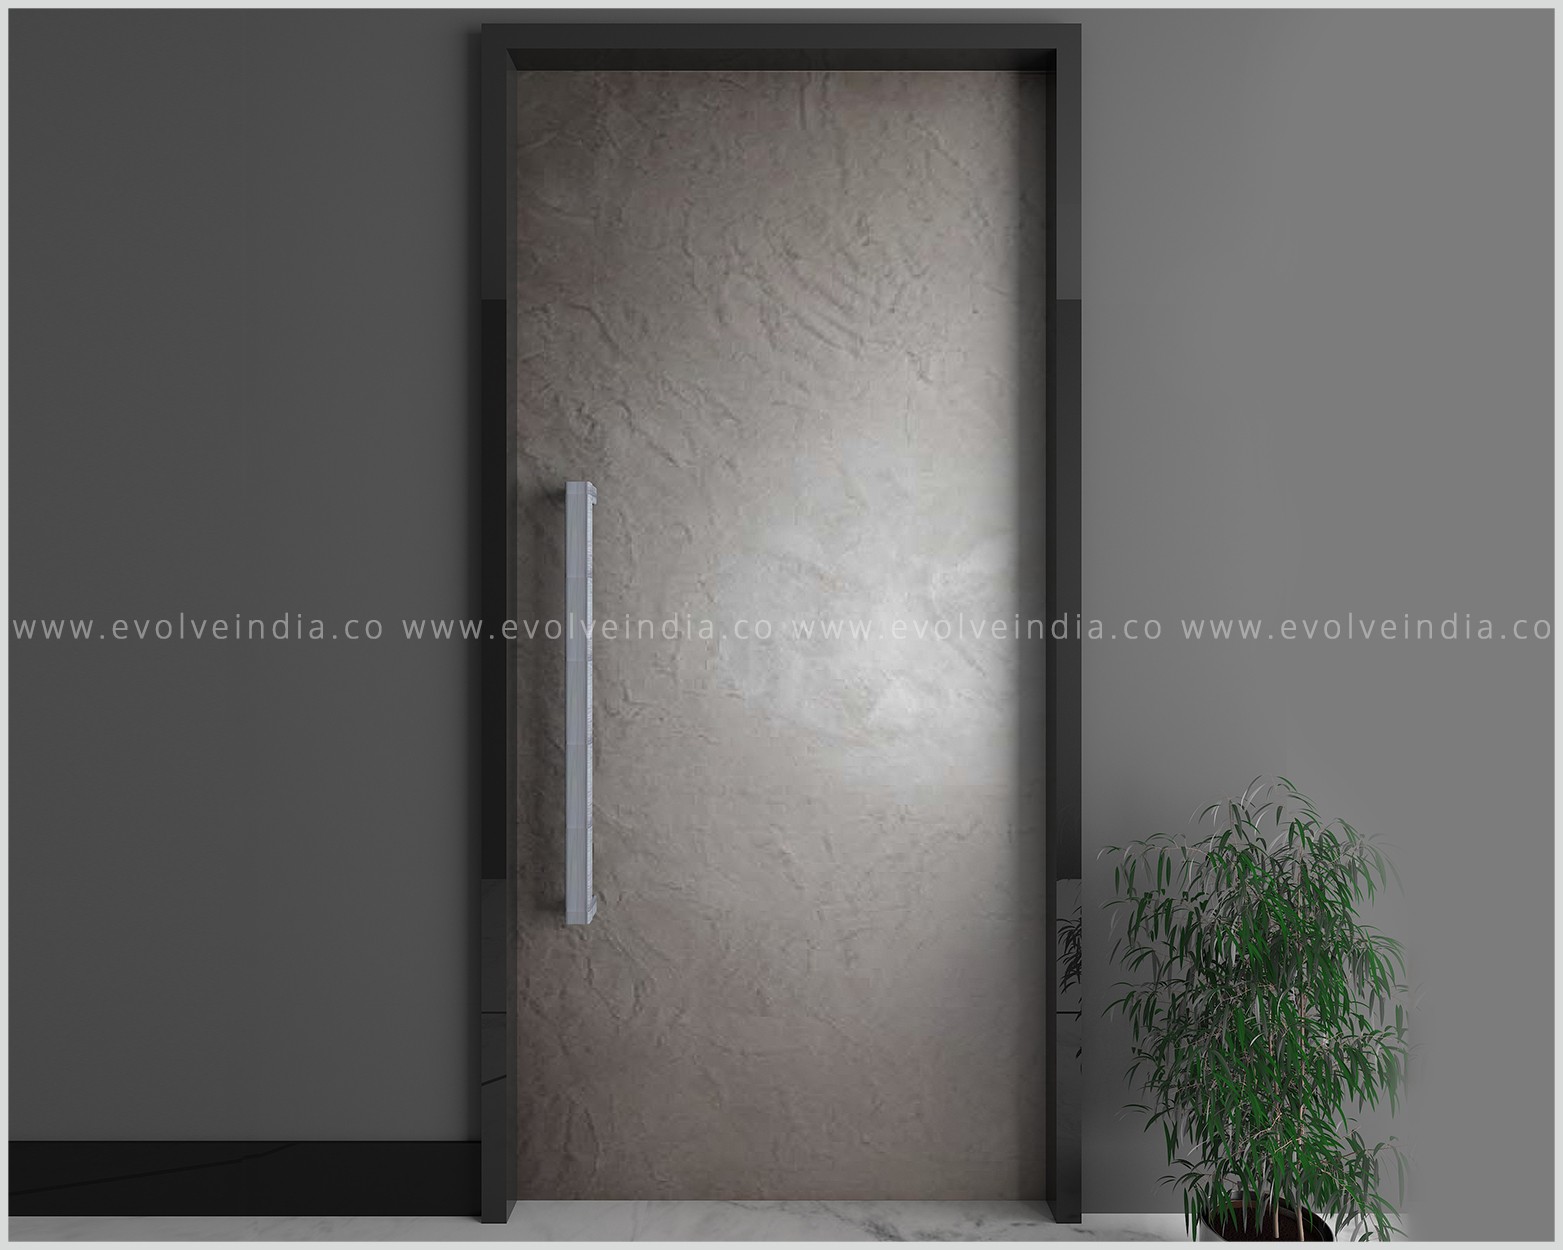 Designer door skin designed using concrete finishes